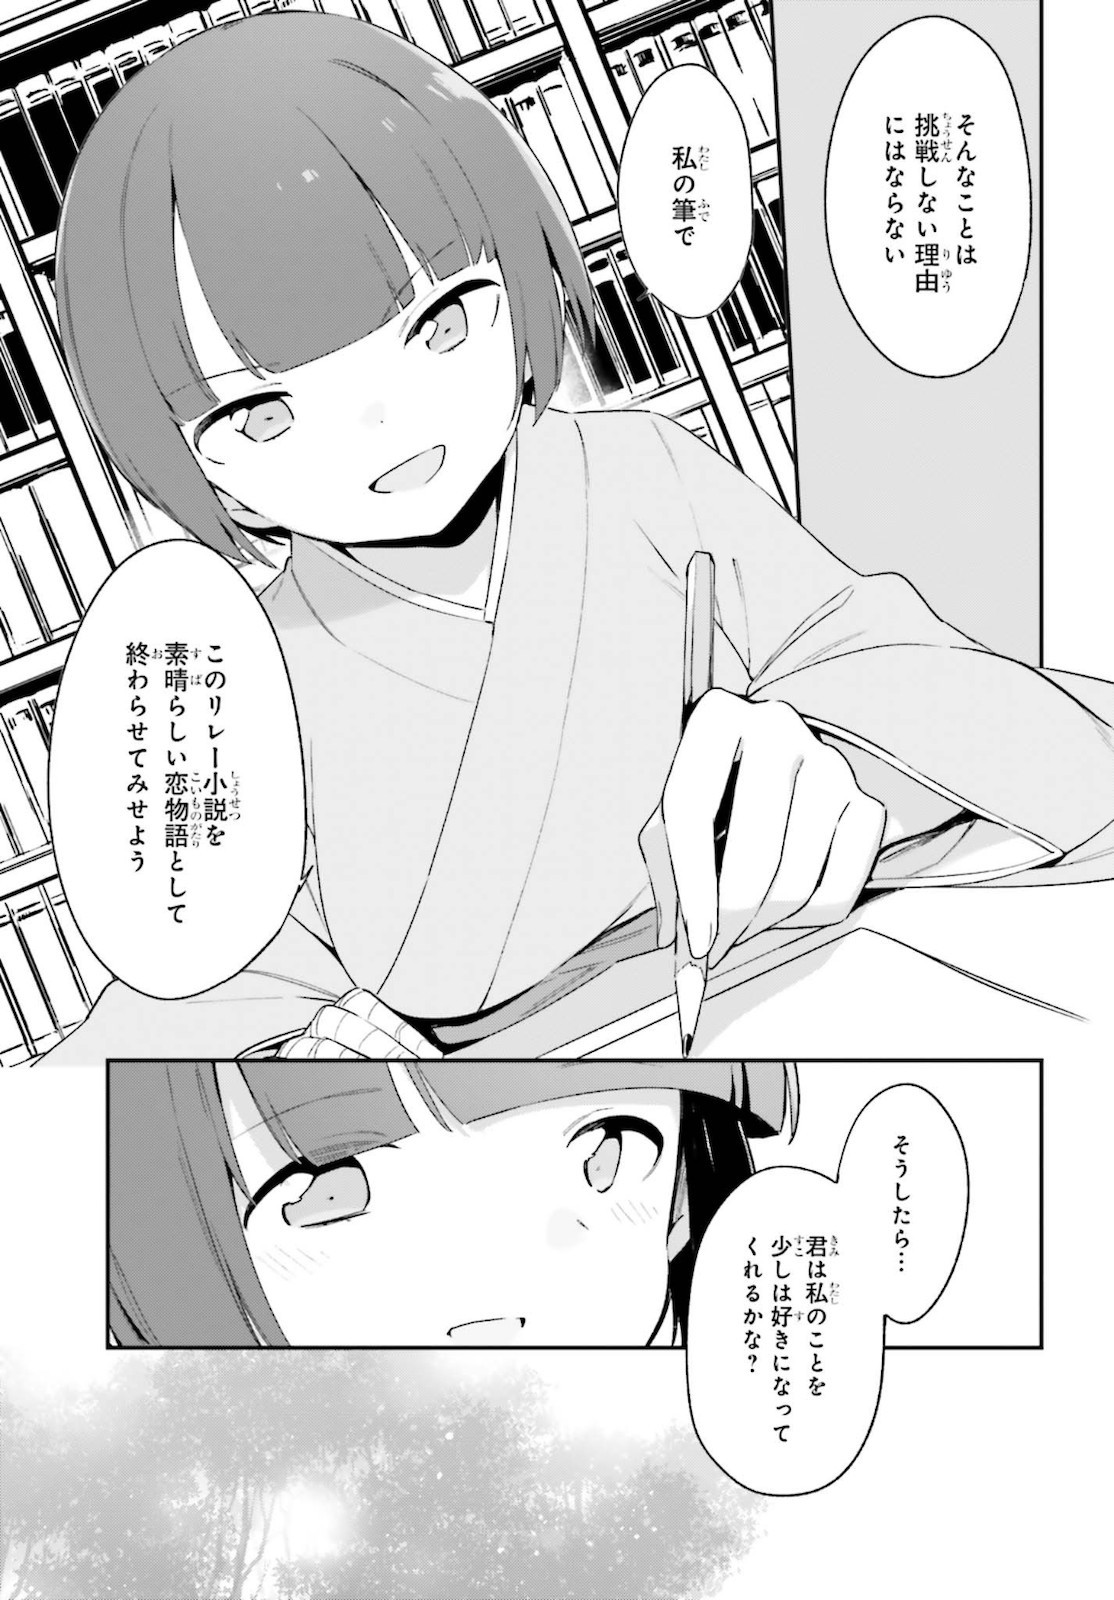 Ero Manga Sensei - Chapter 71 - Page 31